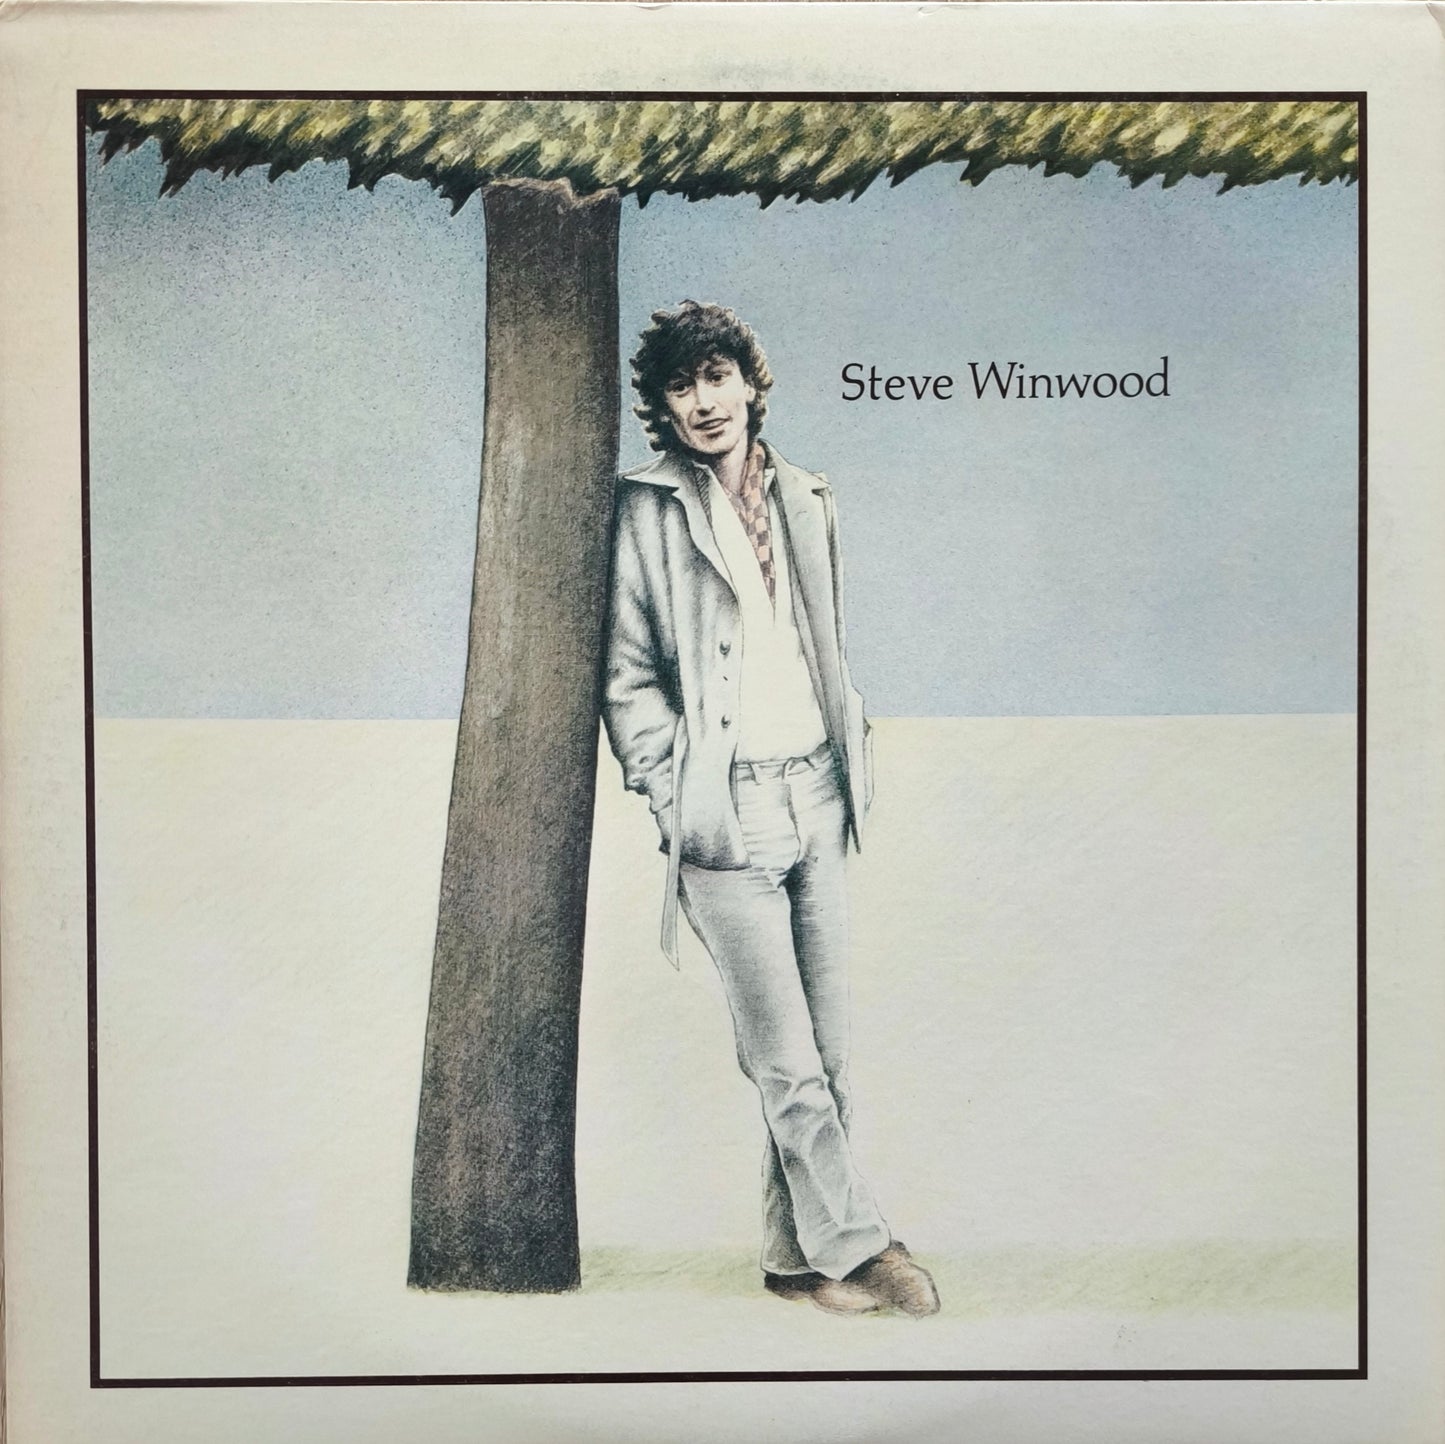 STEVE WINWOOD - Steve Winwood (pressage US)